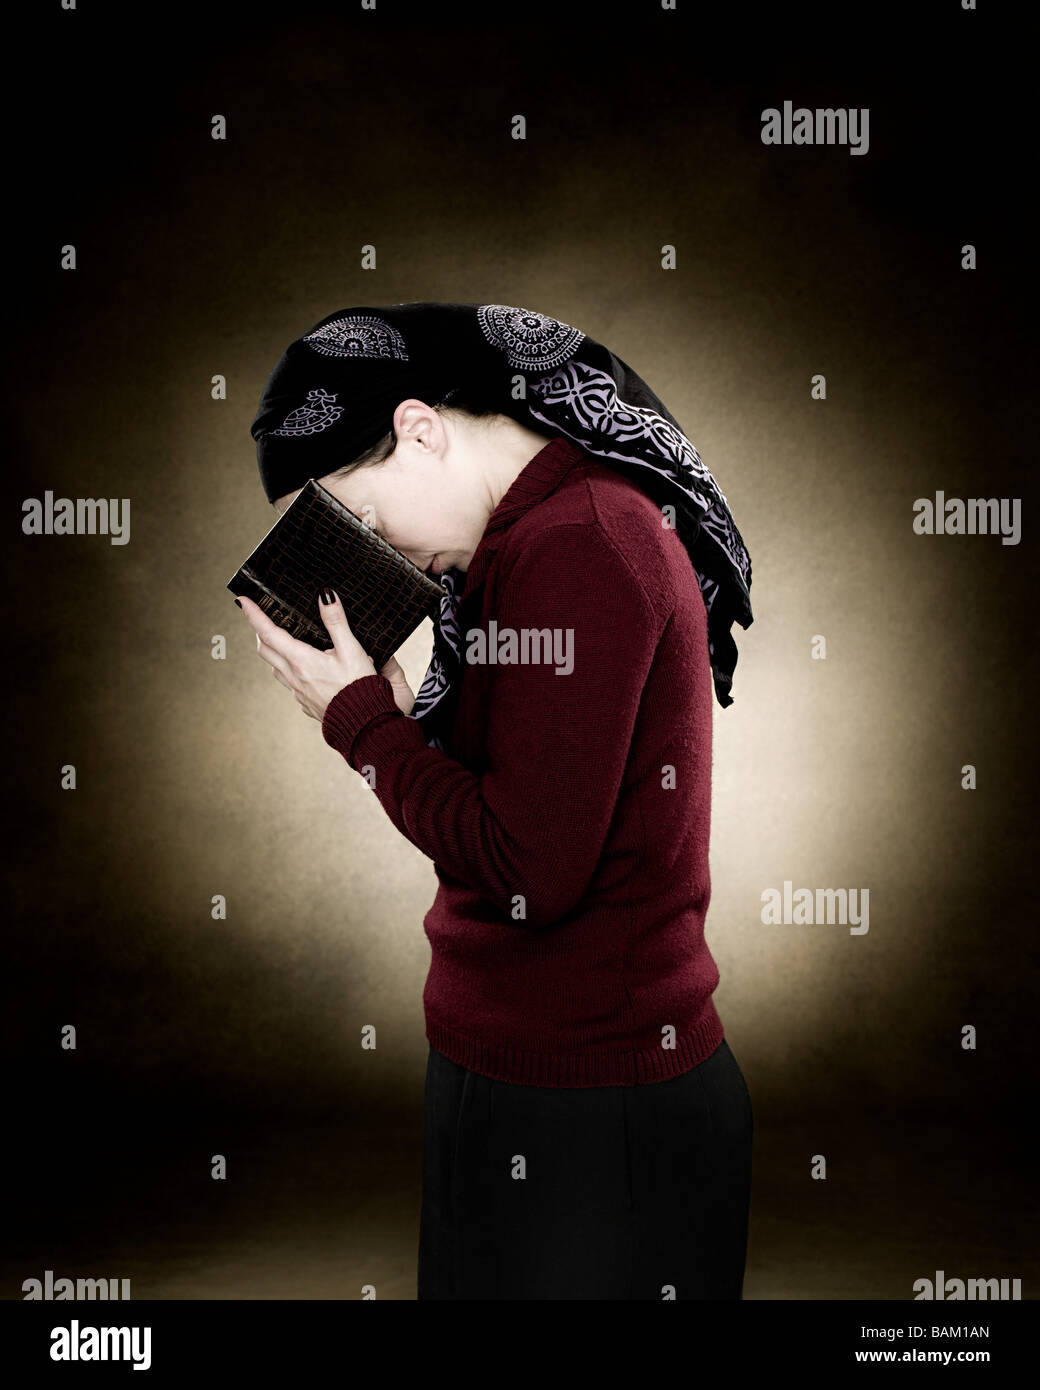 A jewish woman praying Stock Photo